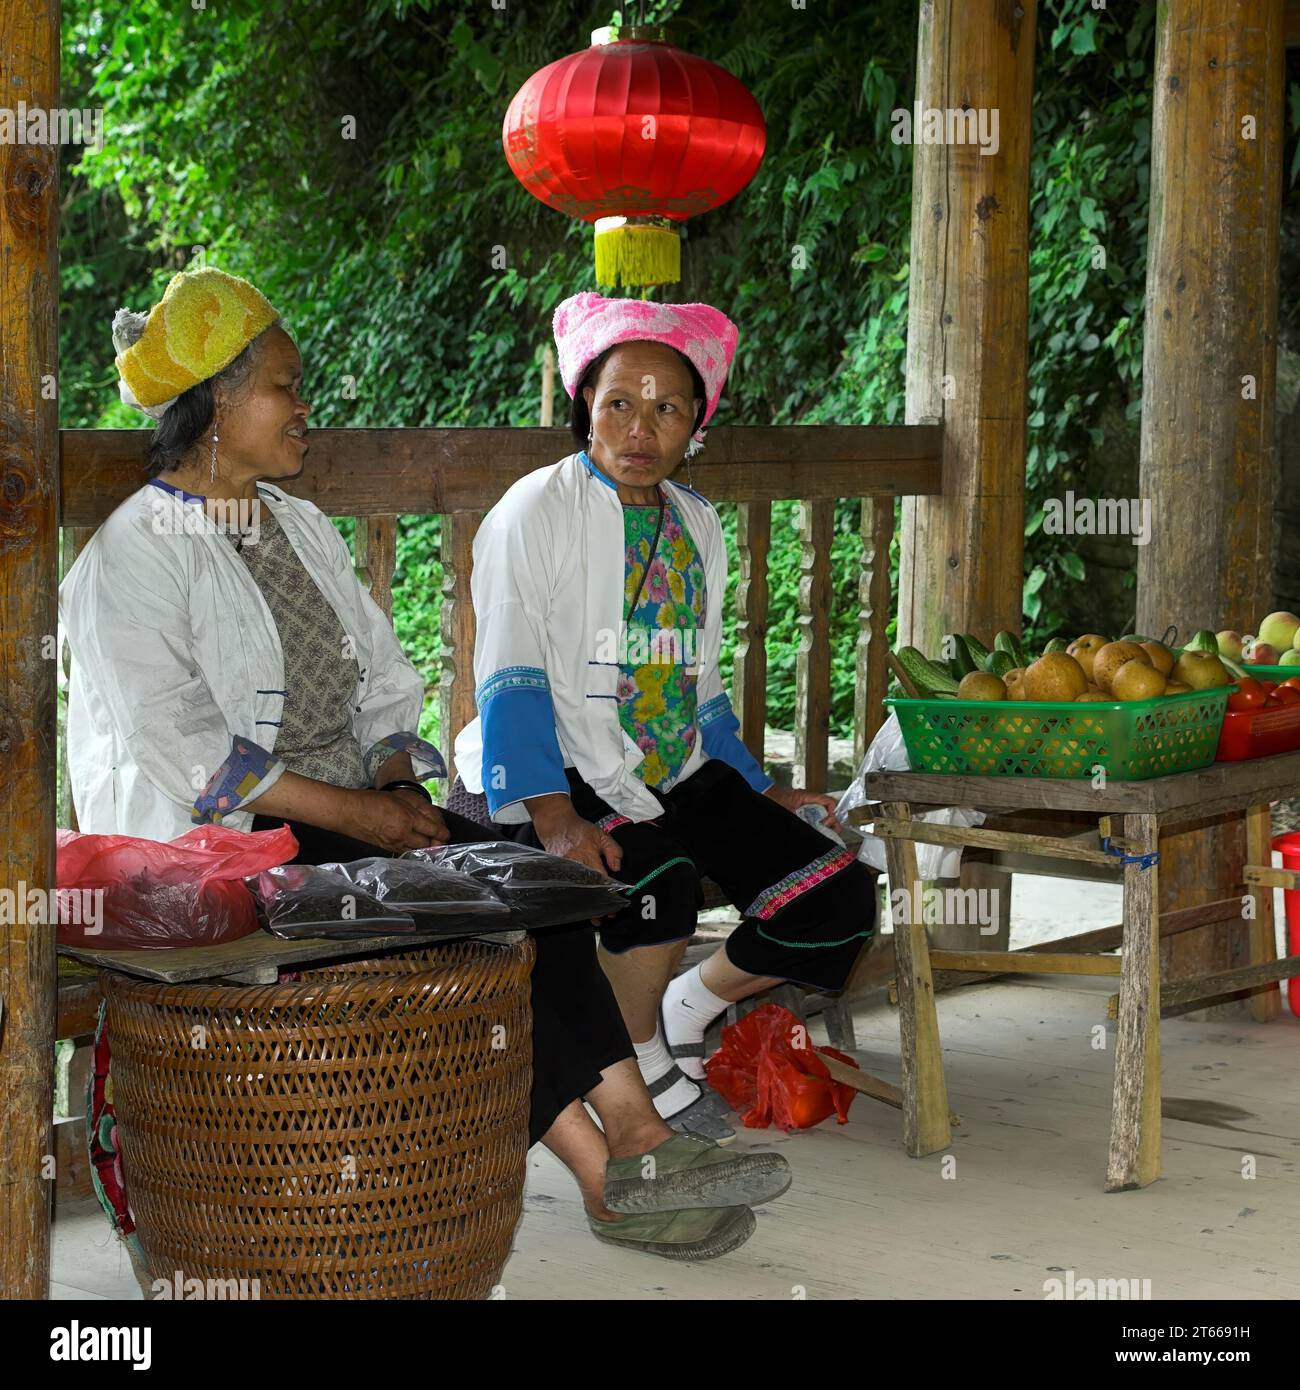 龙胜镇 (龙胜县) 中國 Longsheng, Longji Ping'an Zhuang, China; Chinesische Frauen verkaufen Obst an der Straße; Chinesische Frauen verkaufen Obst an der Straße Stockfoto